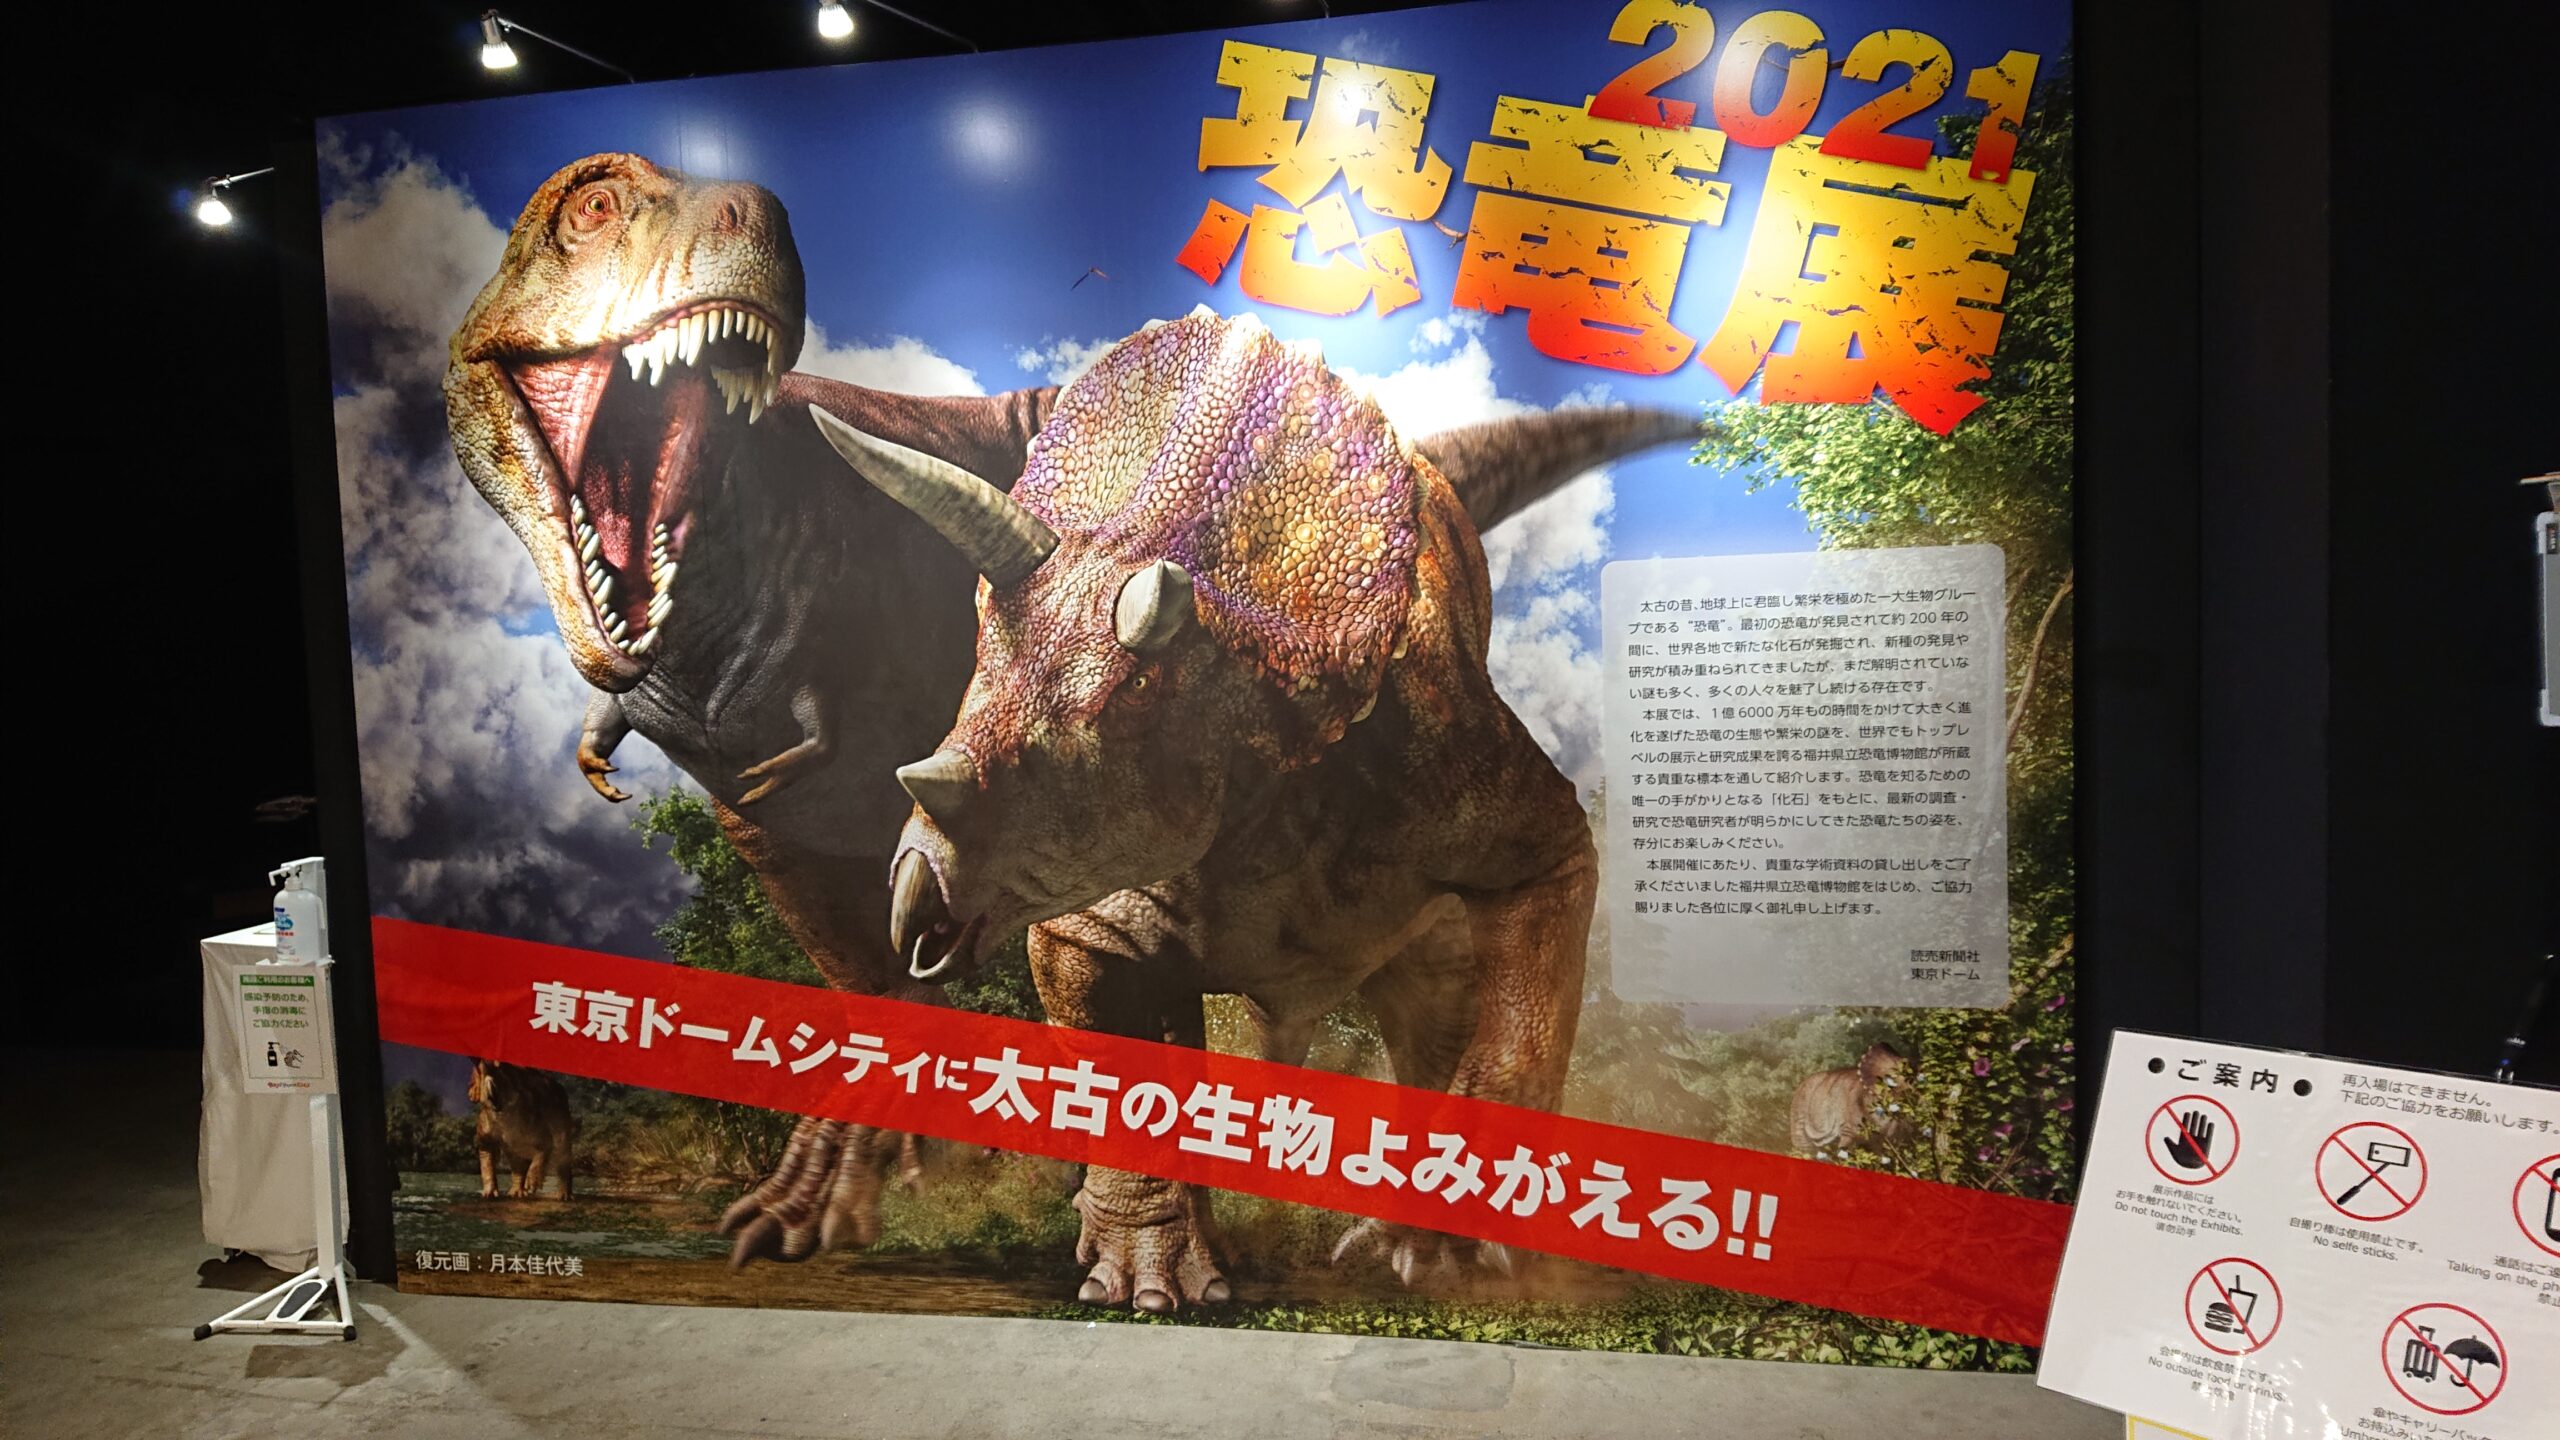 東京ドームシティで開催されている恐竜展2021のパネル